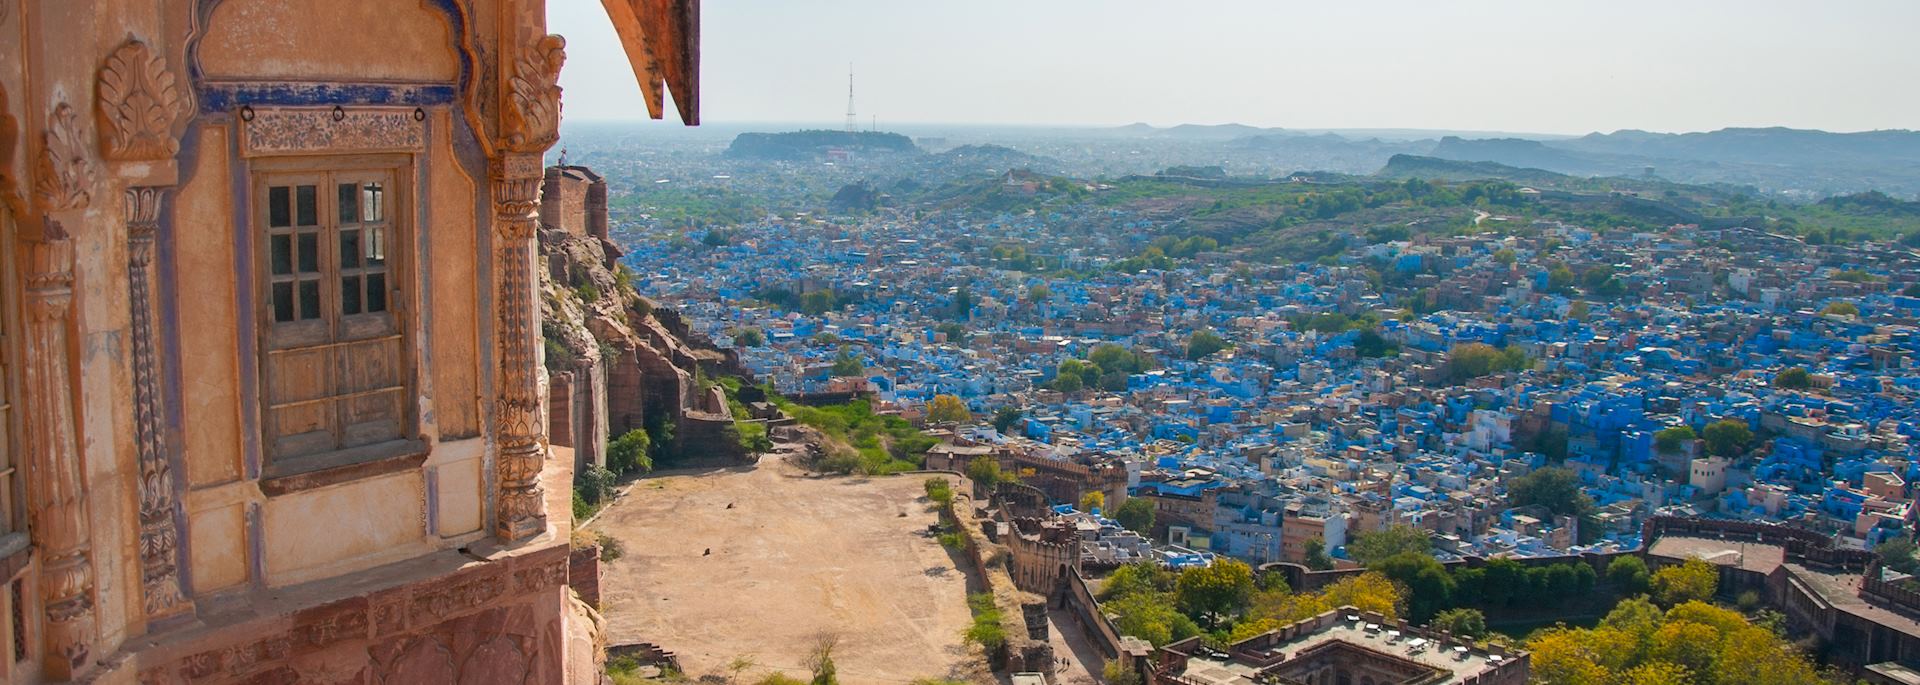 Jodhpur viewed from Mehrangarh Fort, India